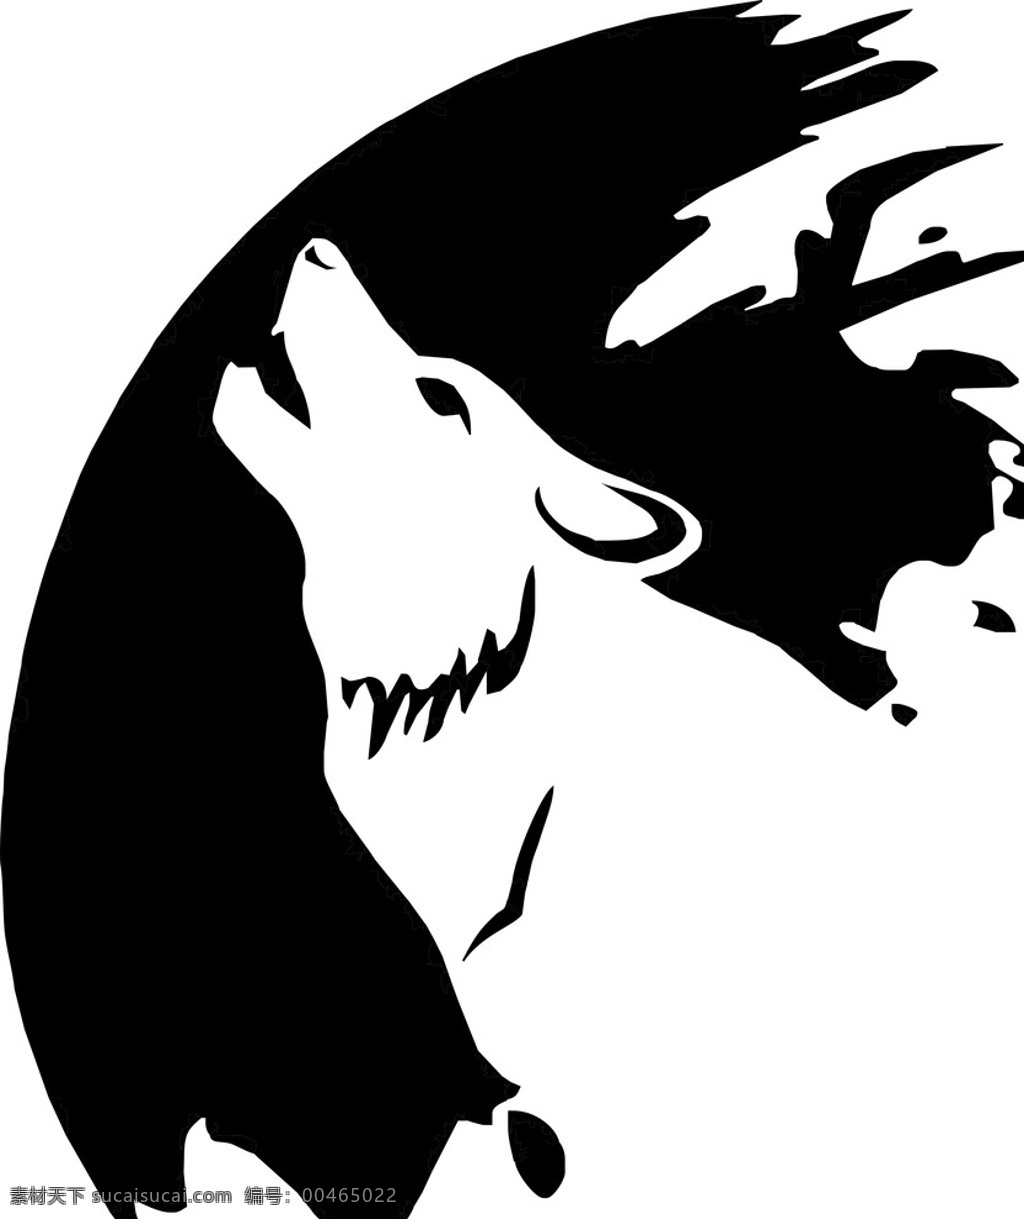 狼 黑白 矢量图 狼嚎 动植物 生物世界 野生动物